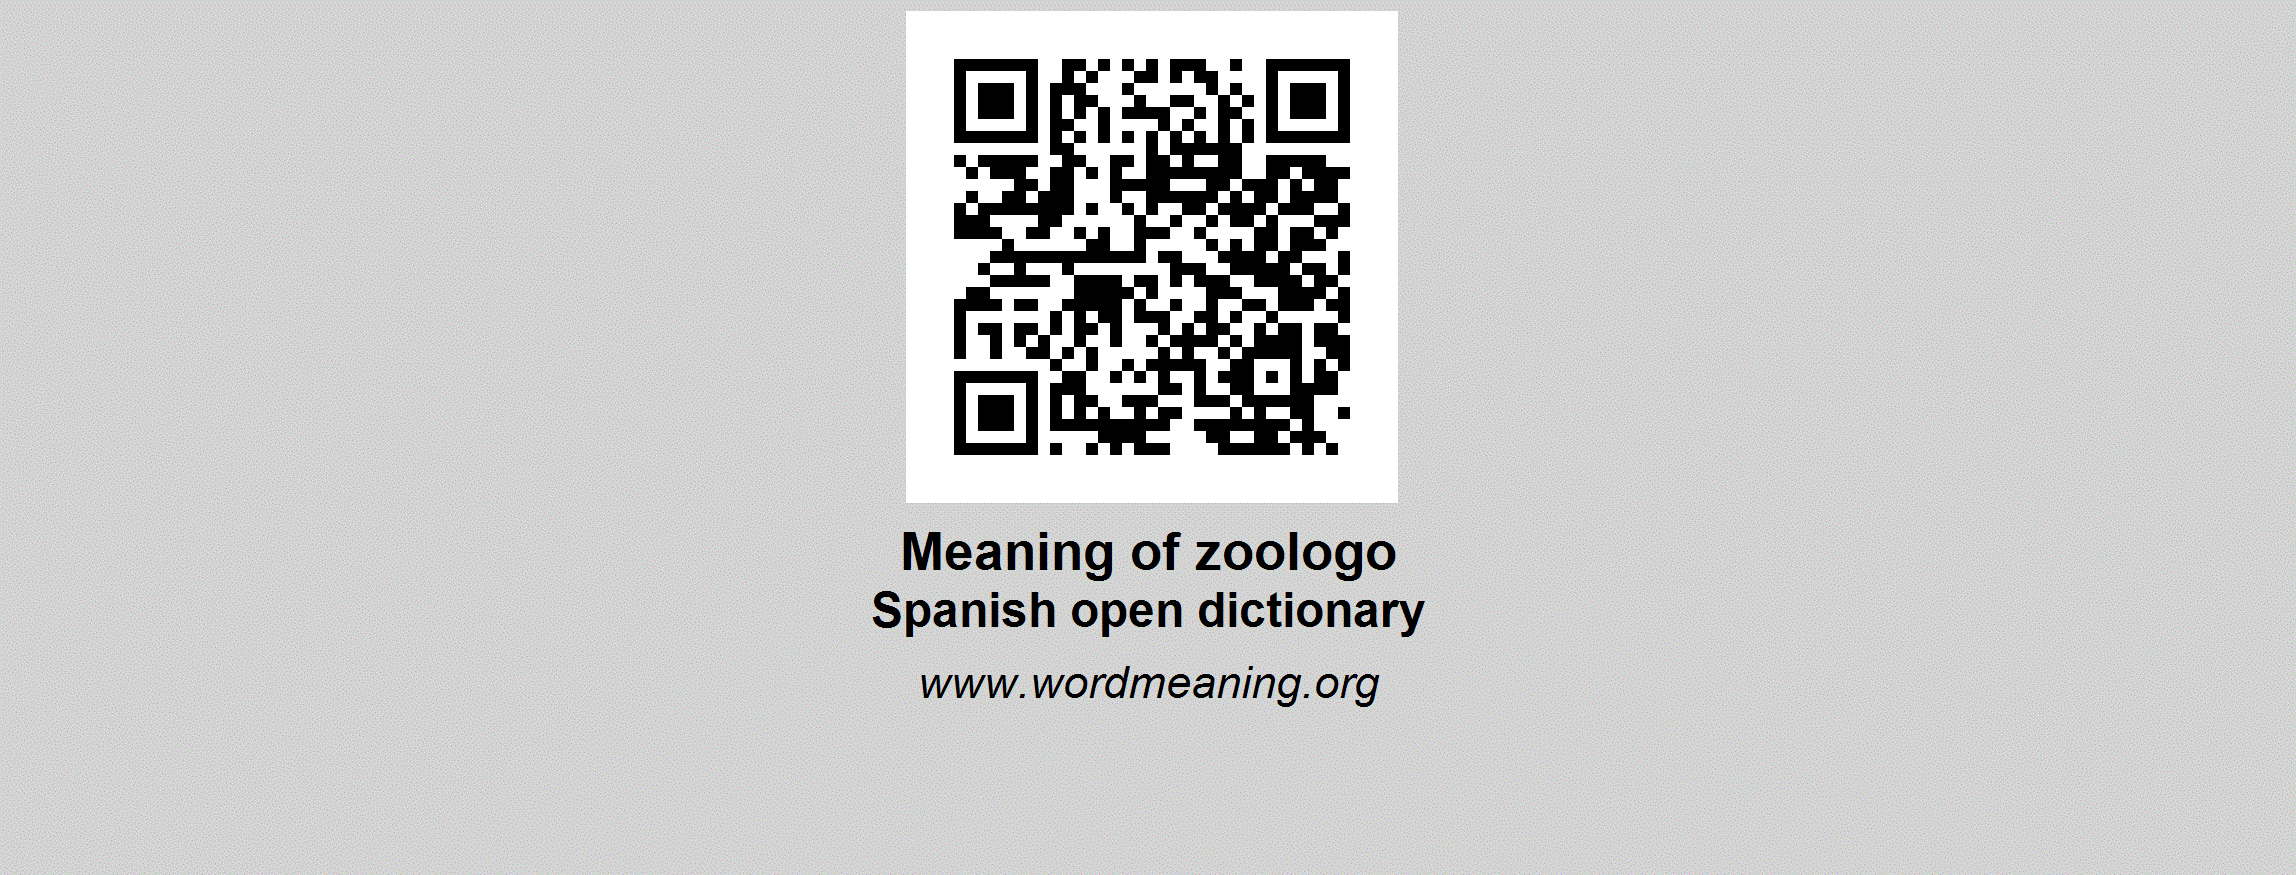 Zoologo Logo - ZOOLOGO - Spanish open dictionary